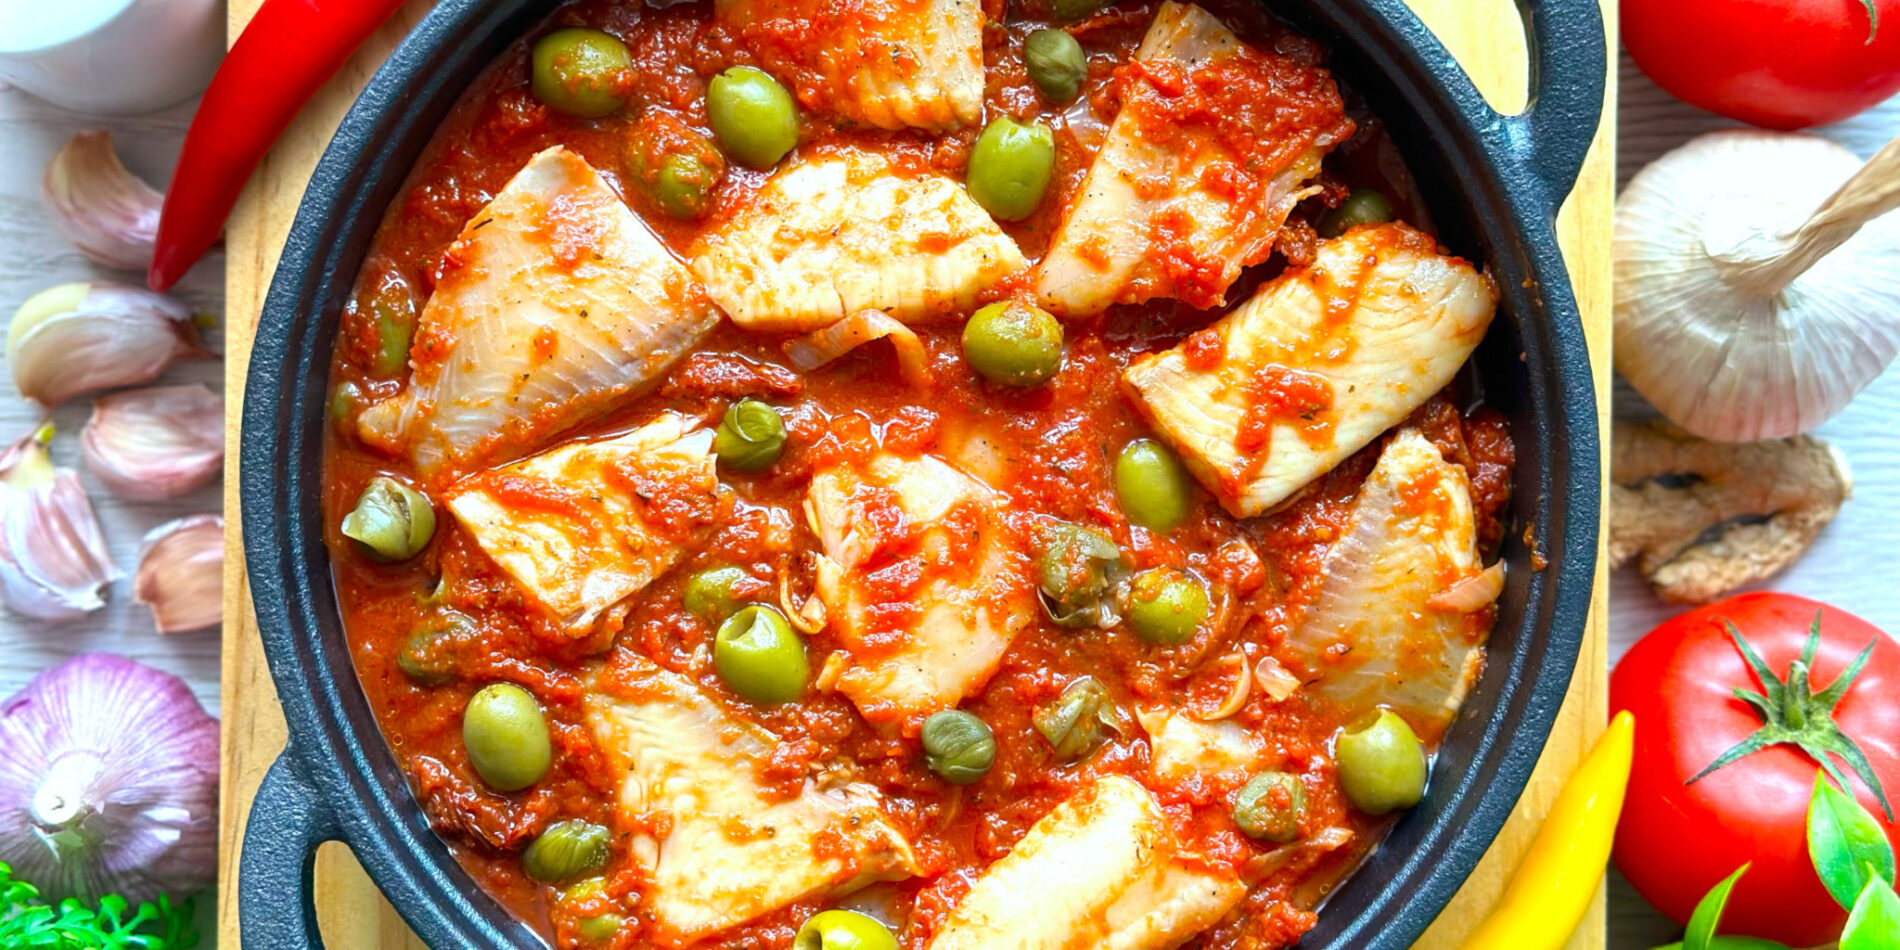 Ryba w pomidorach z oliwkami i kaparami - propozycja przygotowania